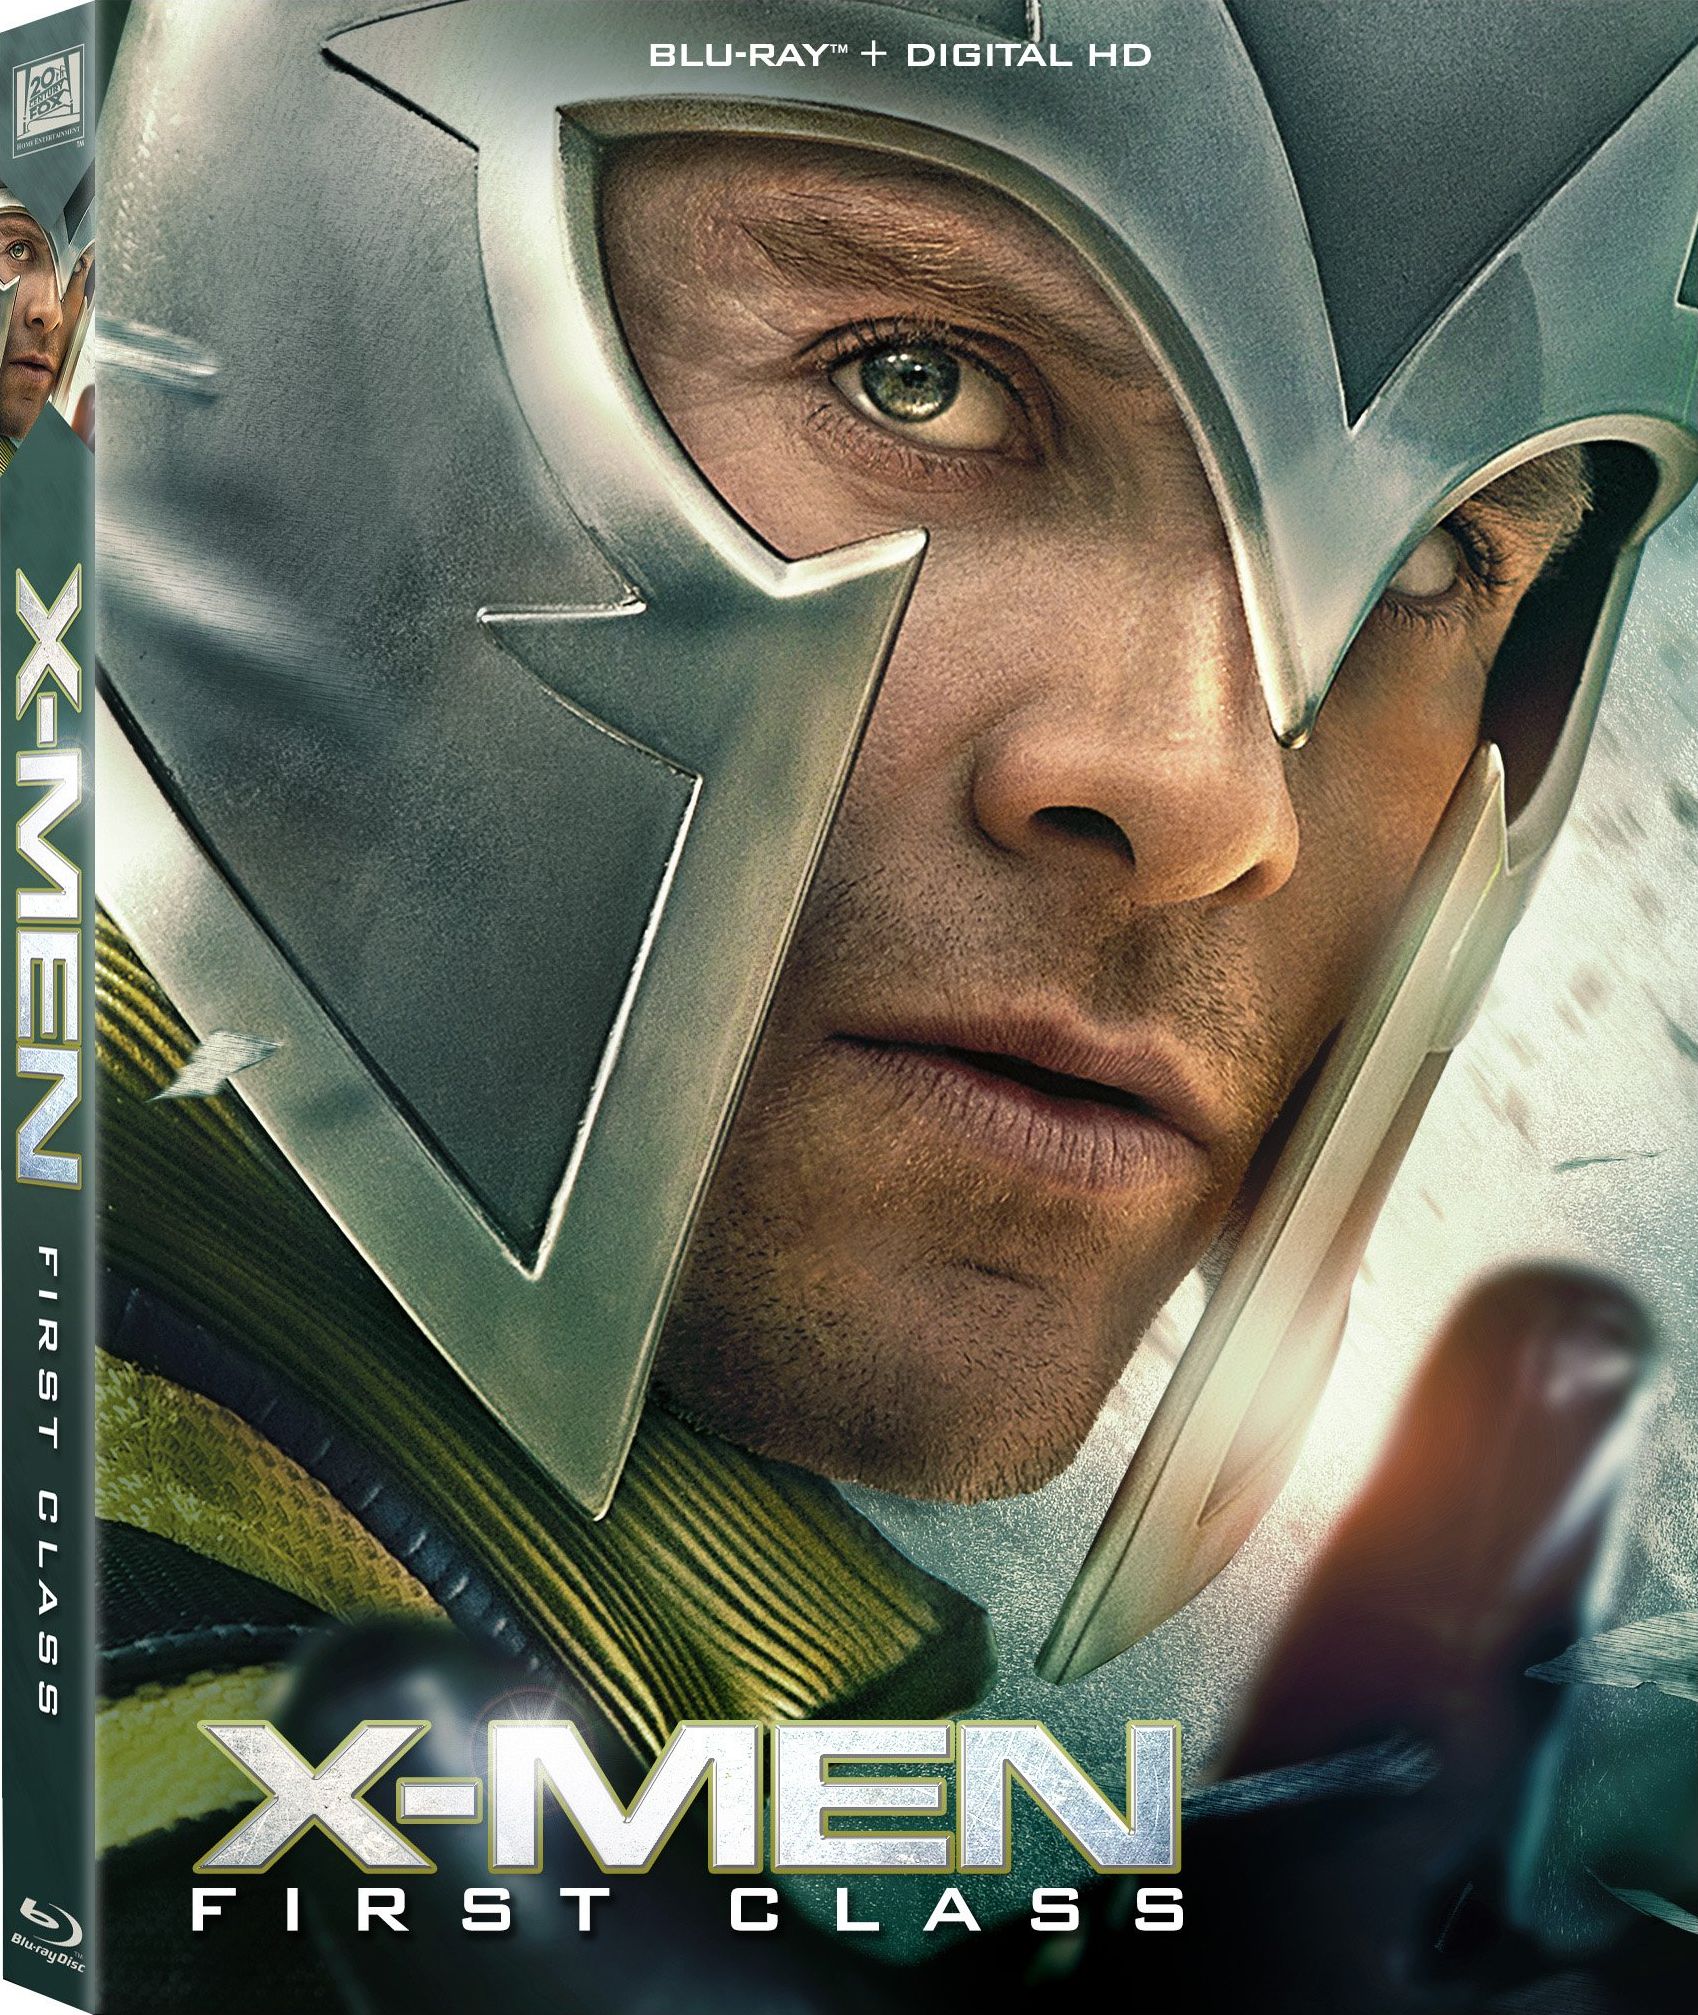 XMen First Class DVD Release Date September 9, 2011